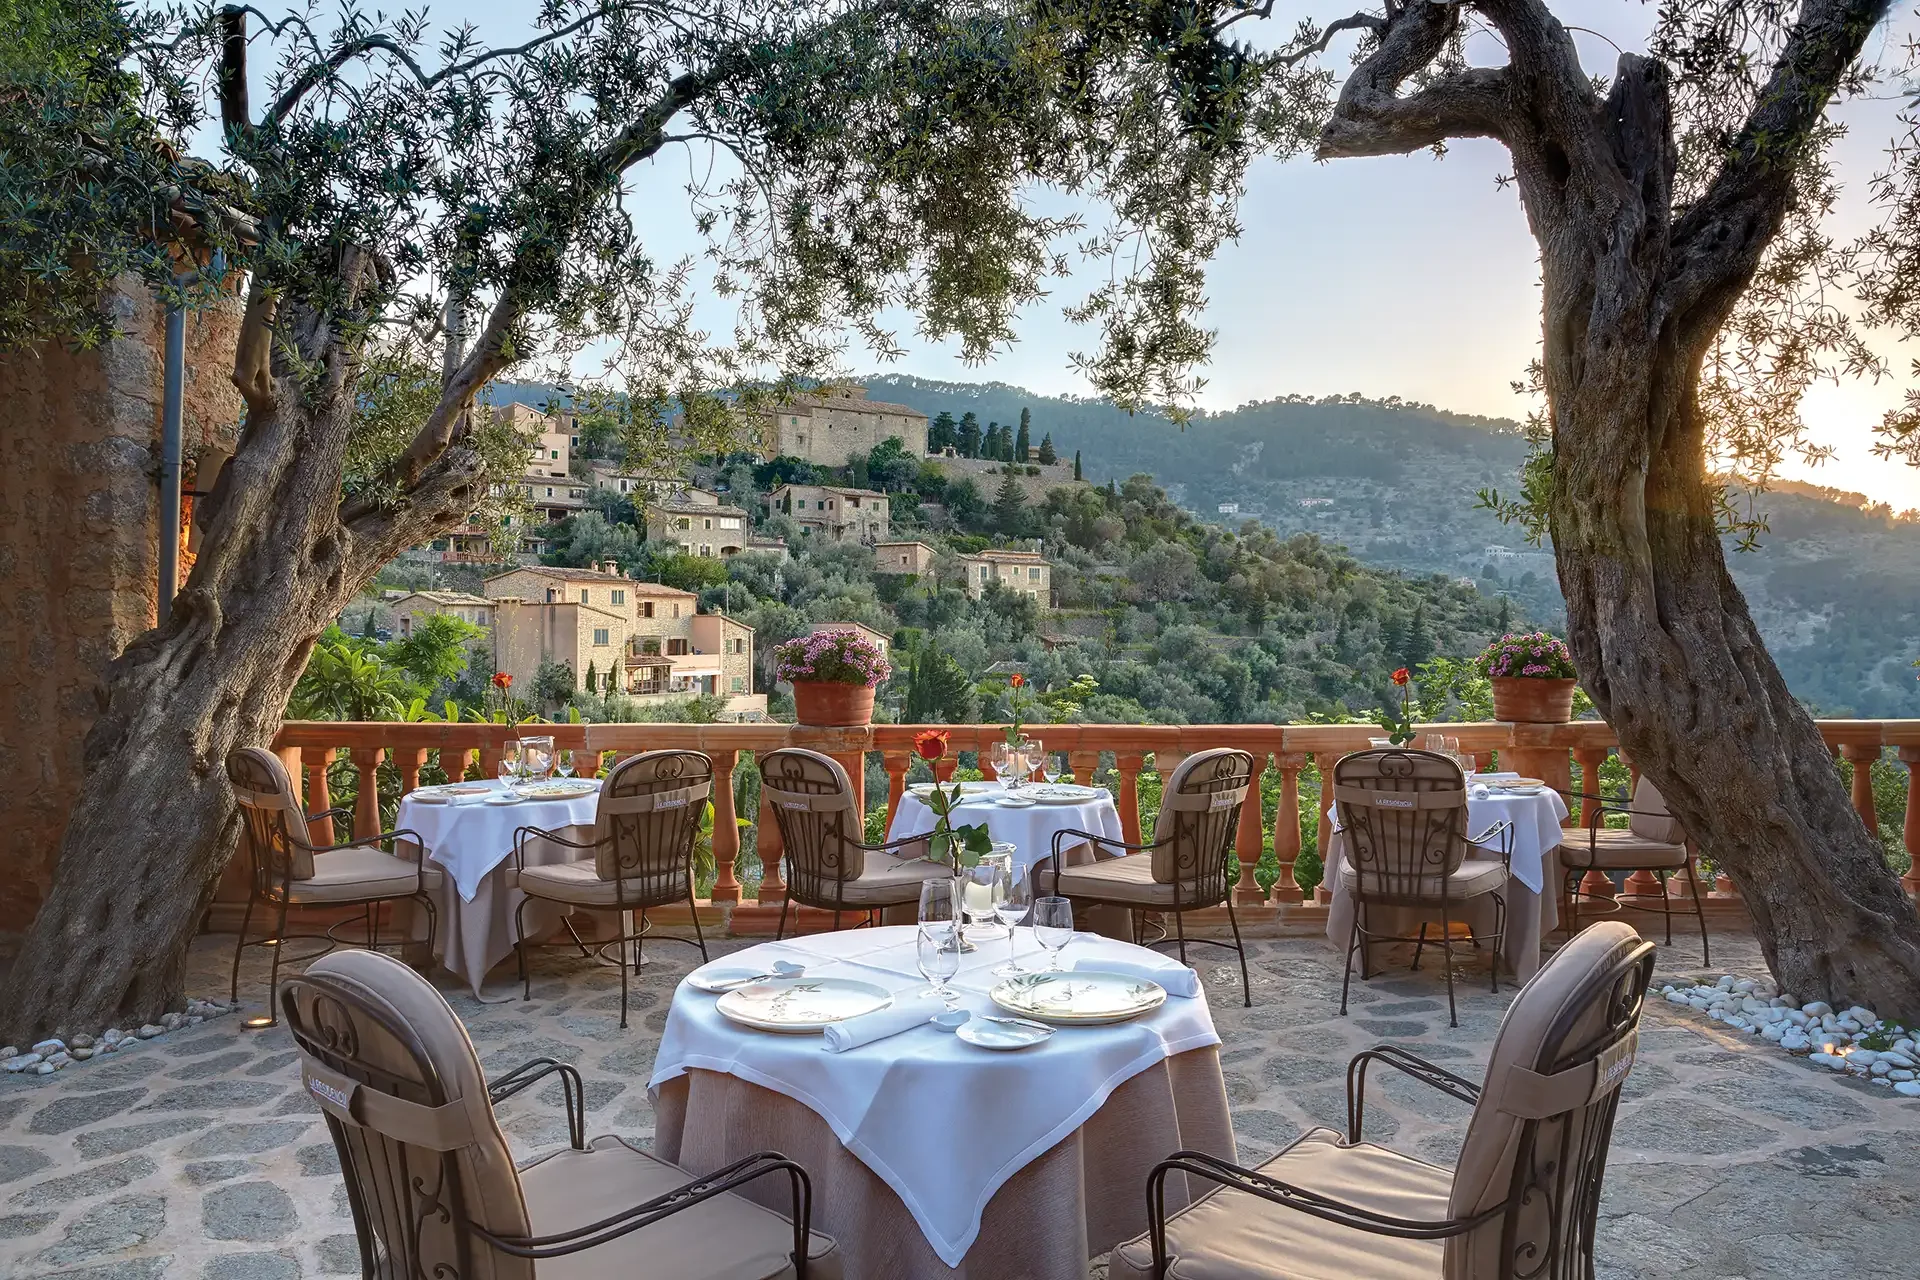 Esstische auf Terrasse unter Olivenbäumen